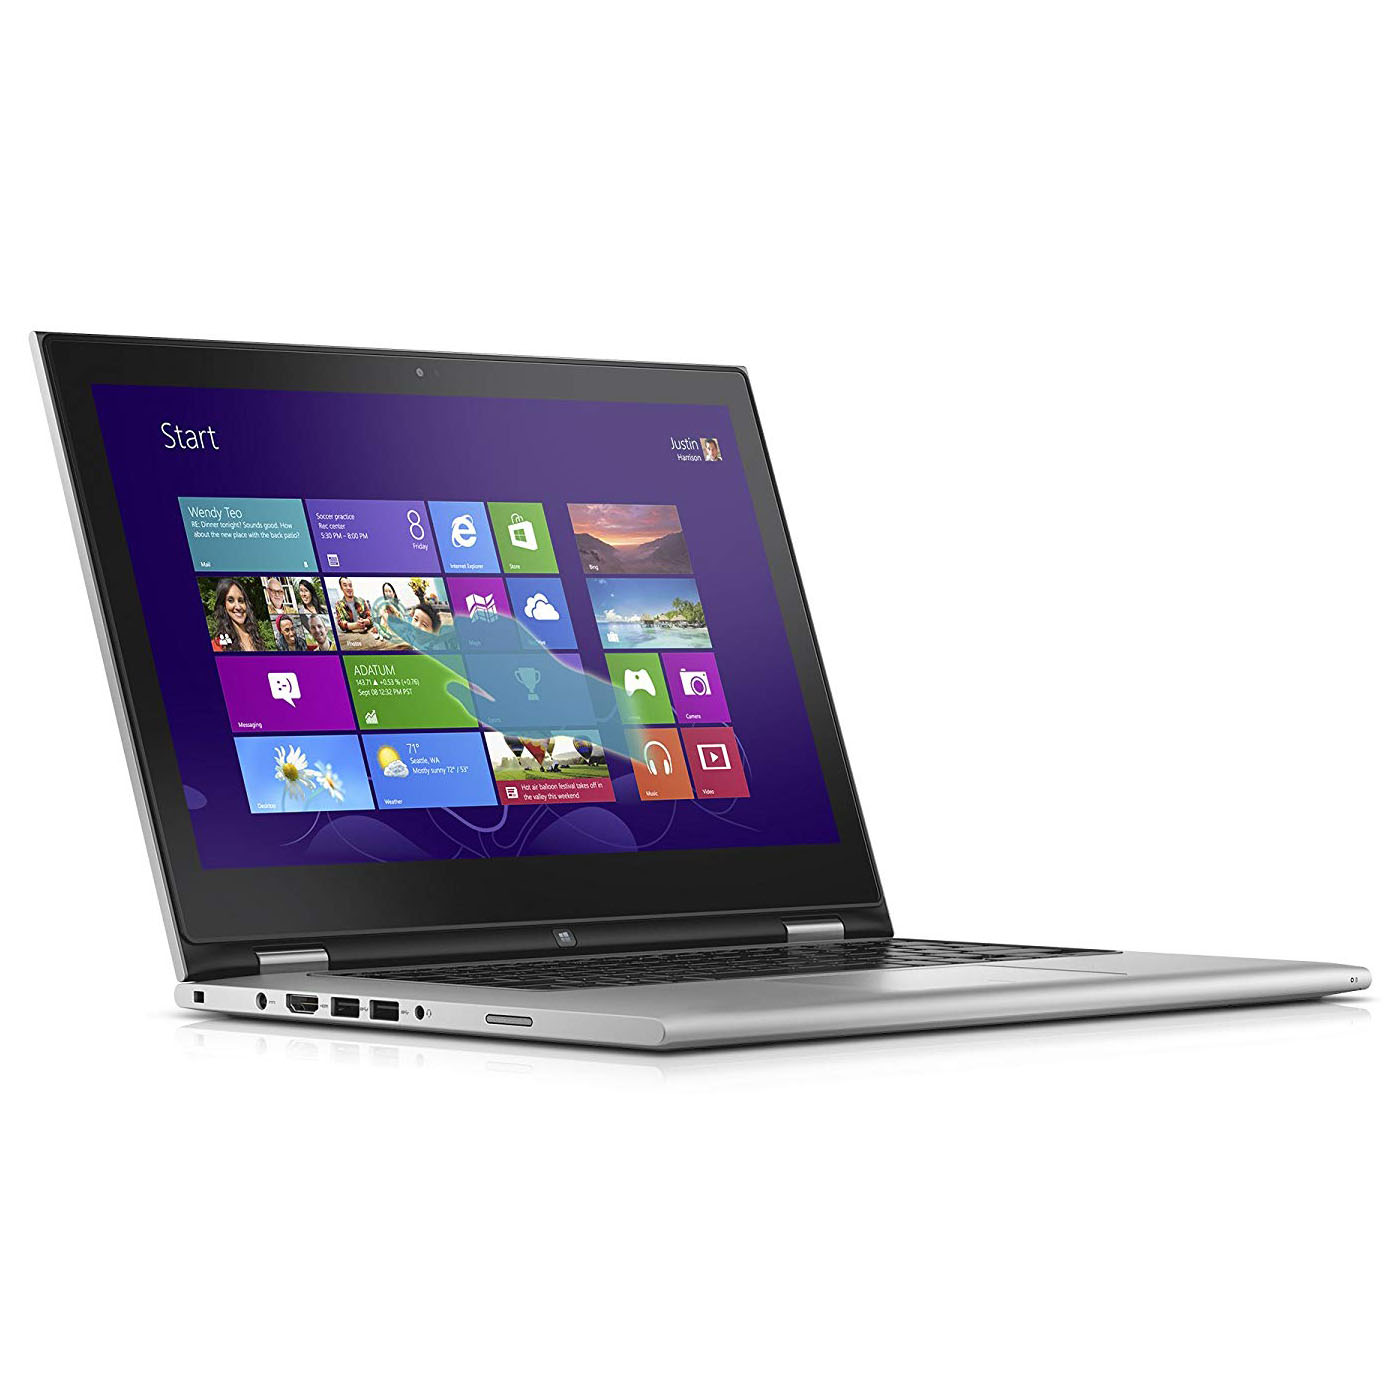 Nâng cấp SSD, RAM cho Laptop Dell Inspiron 13 7368 